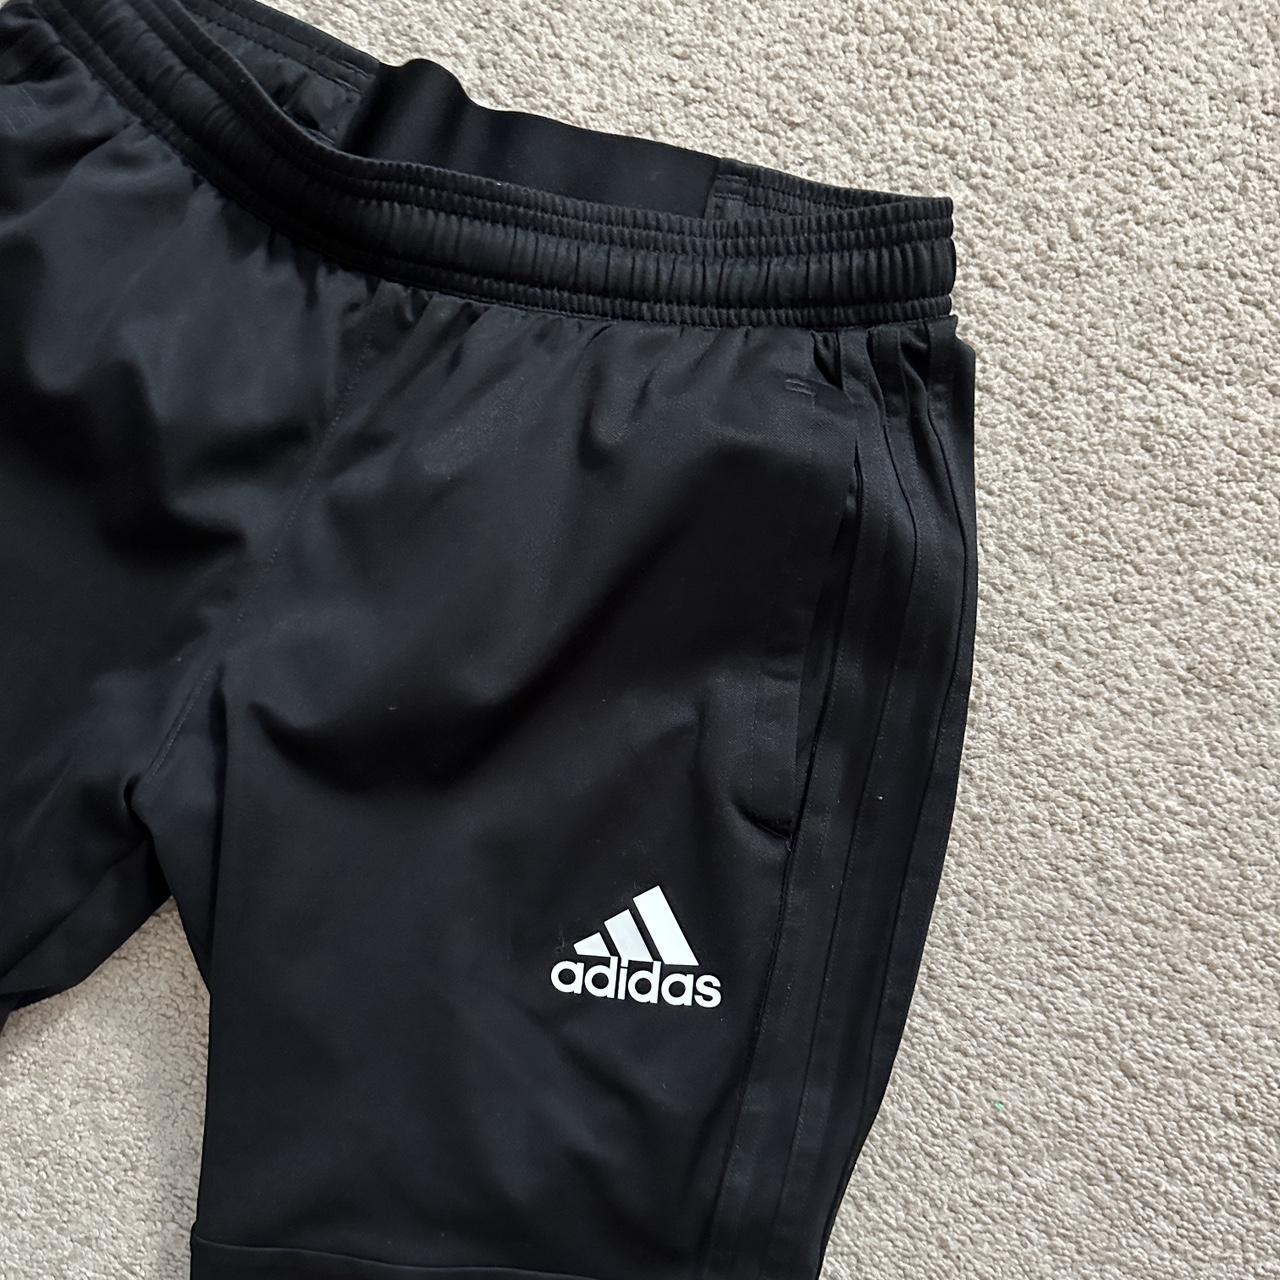 Adidas Originals Men's Black Trousers (2)